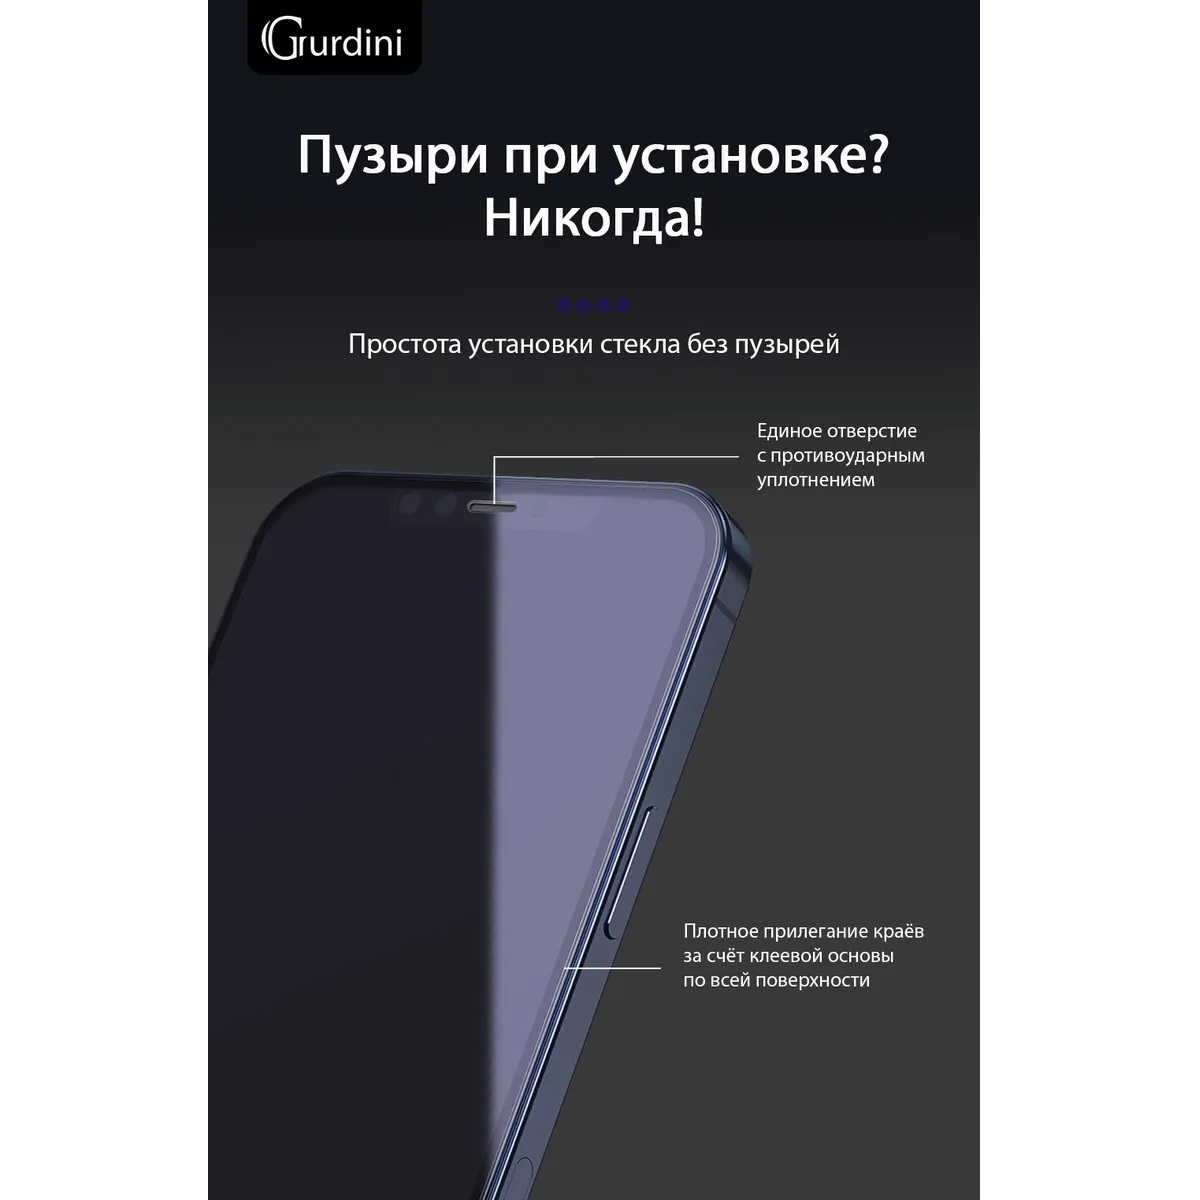 Защитное стекло Gurdini 2.5D Full Cover Glass для iPhone 12 mini